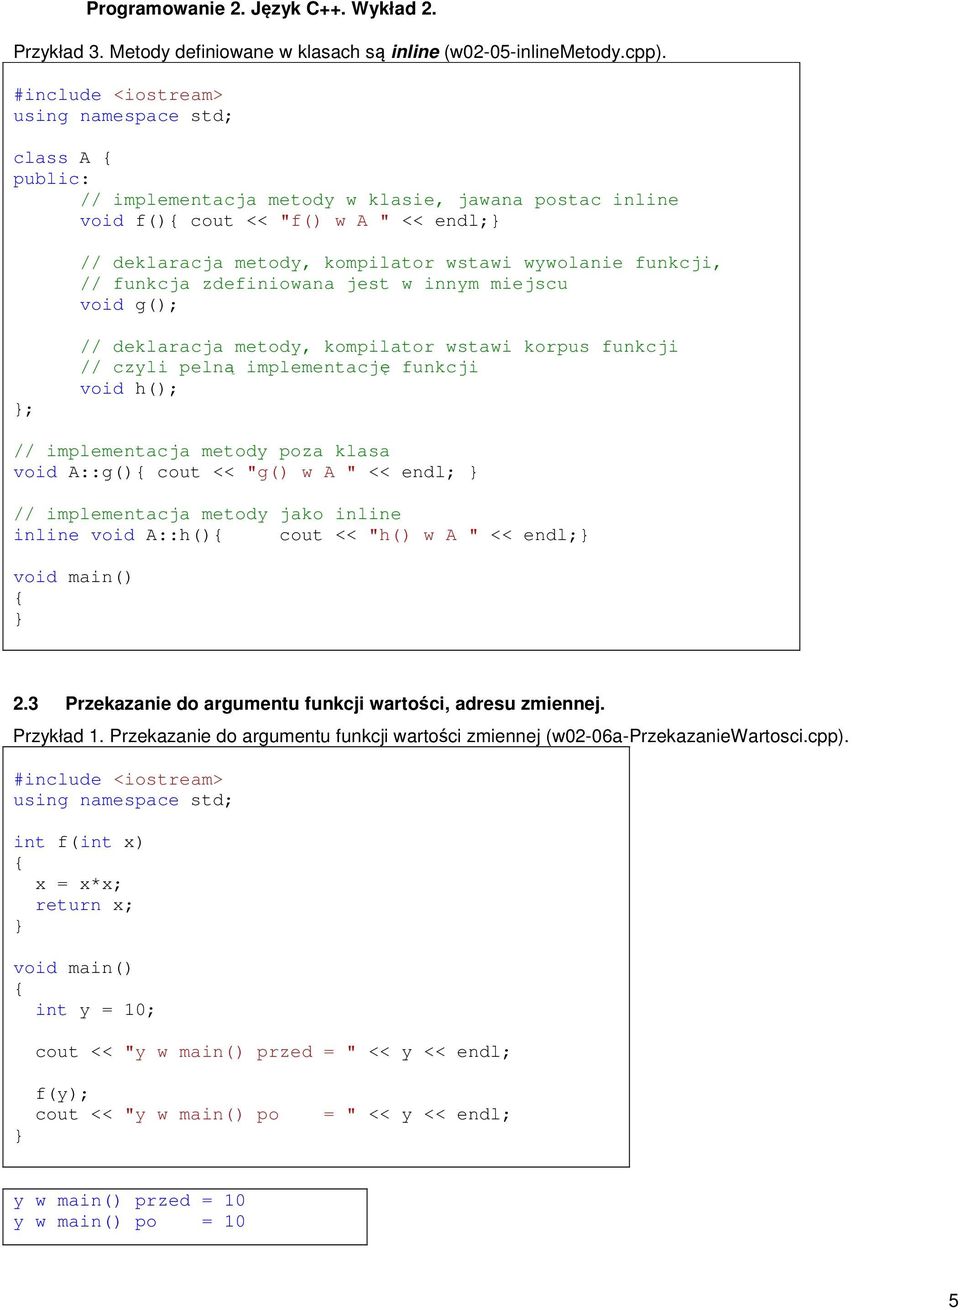 miejscu void g(); ; // deklaracja metody, kompilator wstawi korpus funkcji // czyli pelną implementację funkcji void h(); // implementacja metody poza klasa void A::g() cout << "g() w A " << endl; //